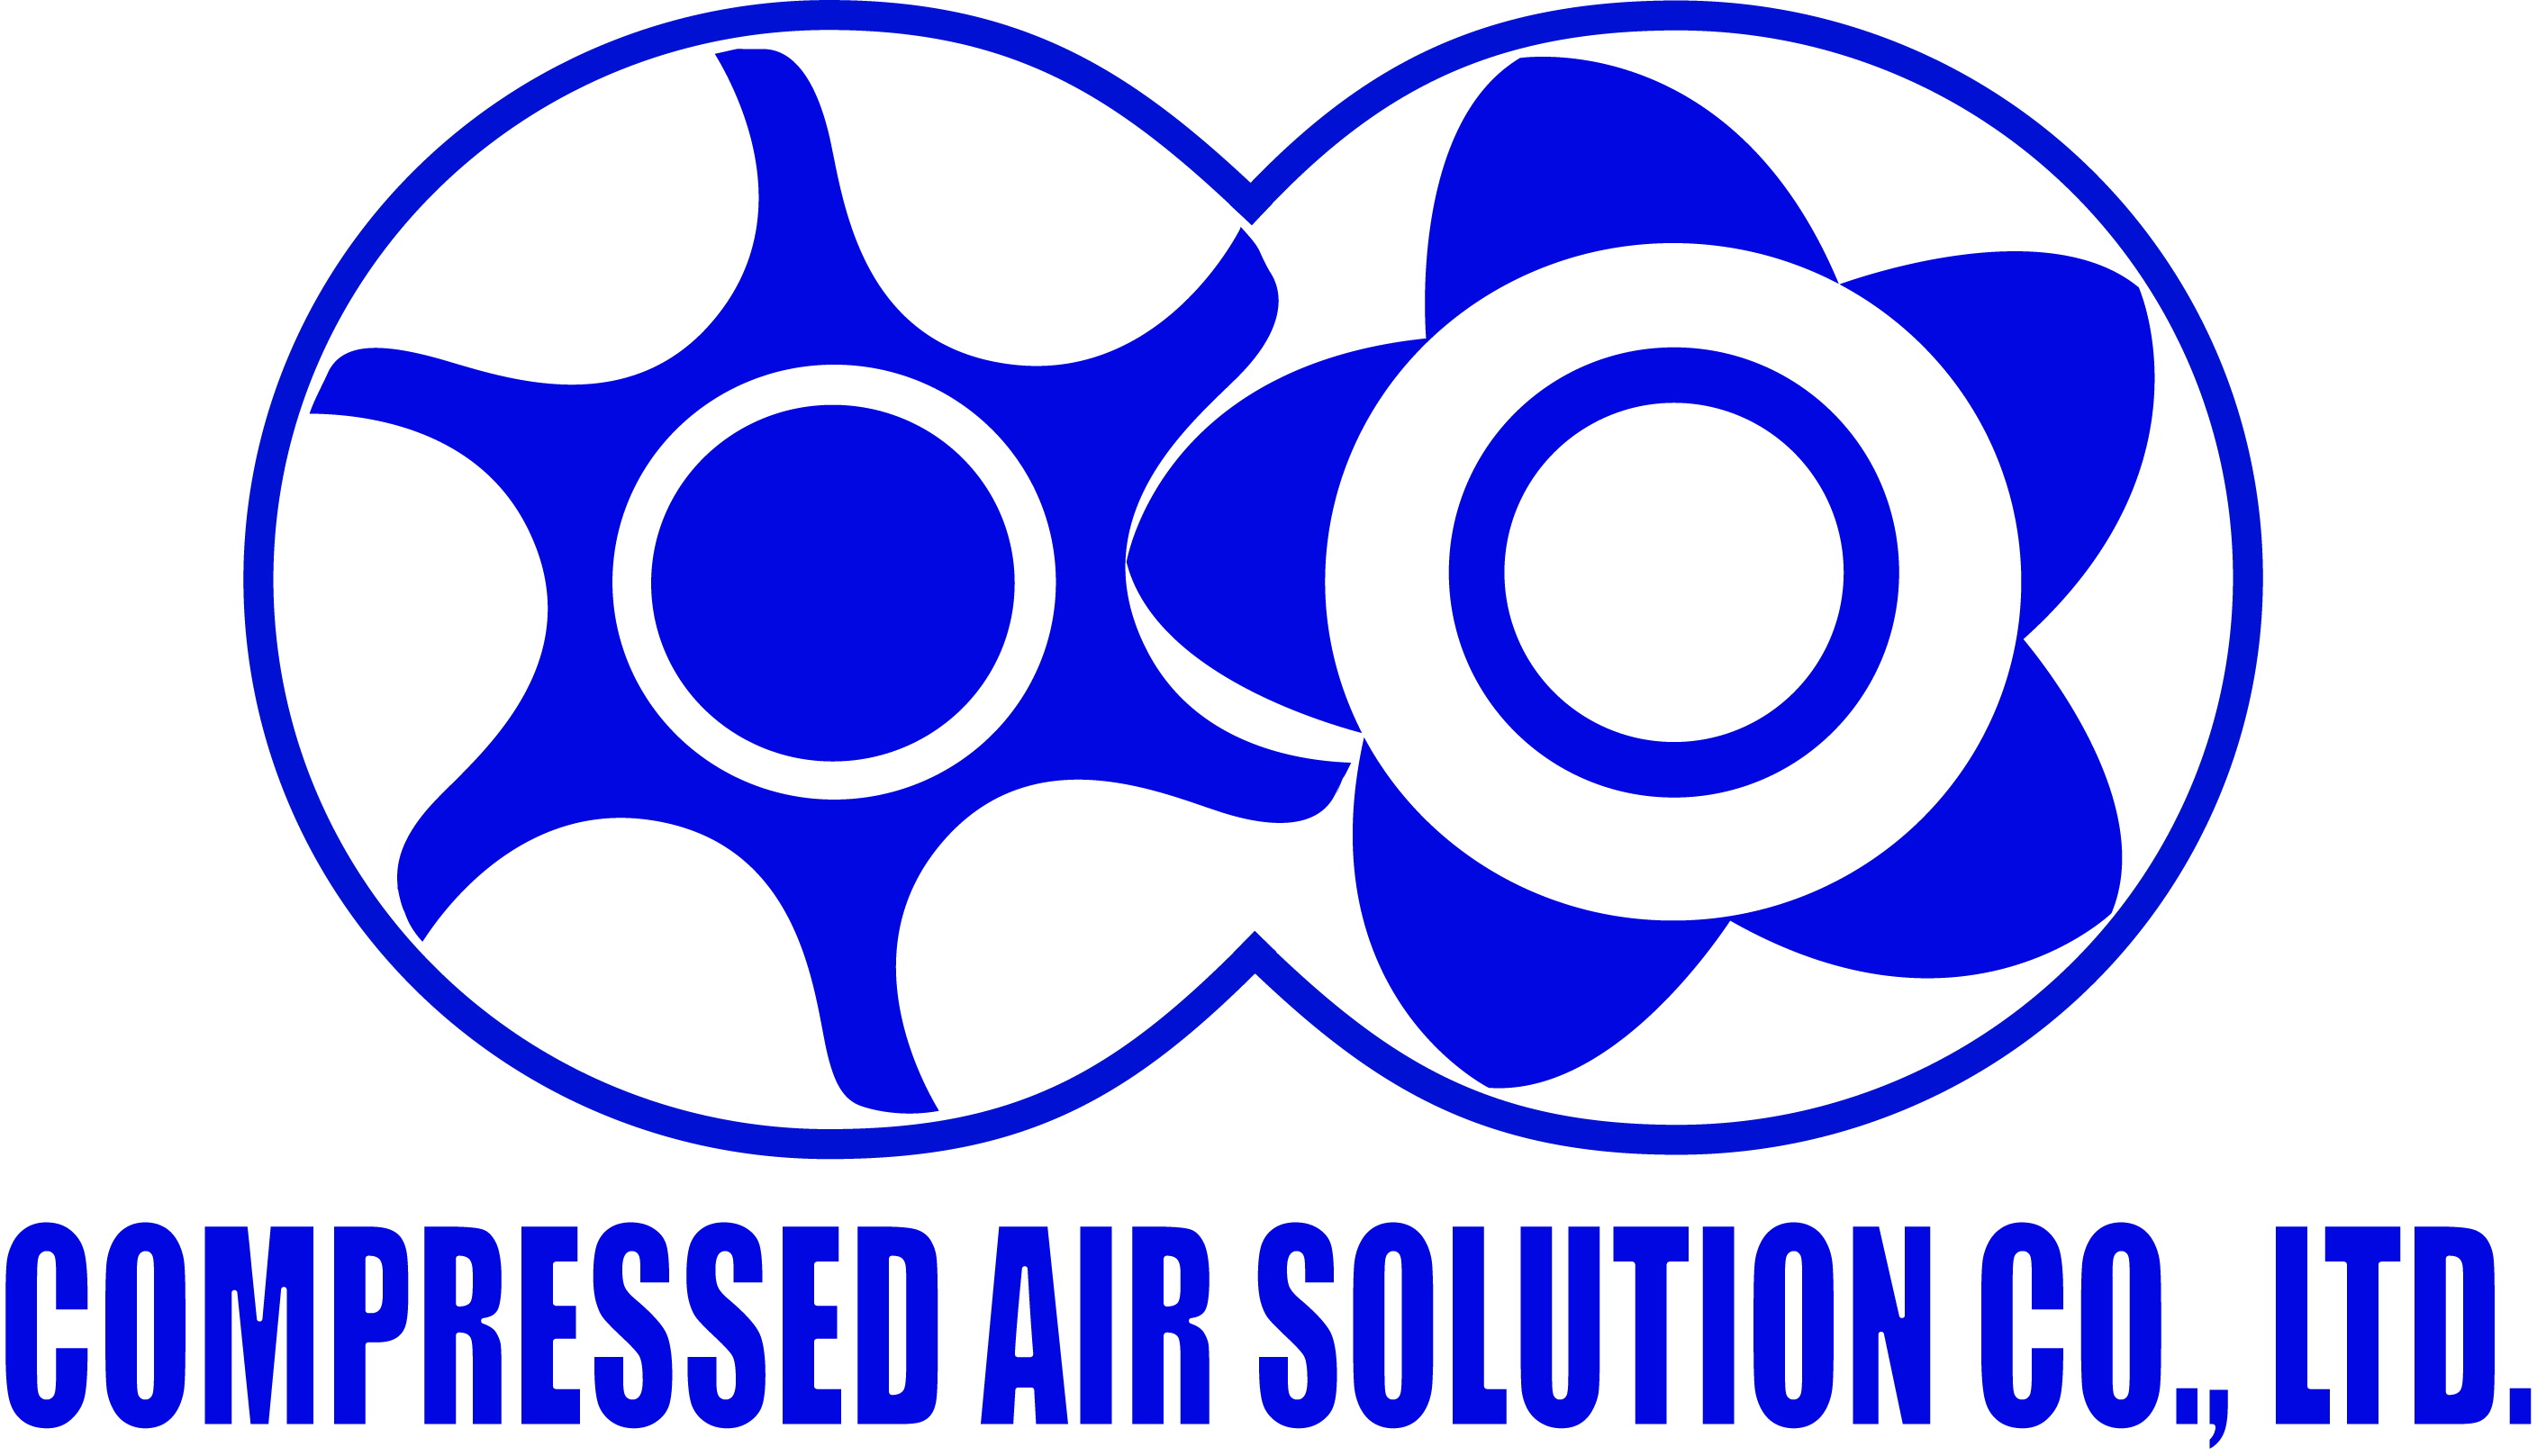 Compressed Air Solution Co.,Ltd., บริษัท คอมเพรส แอร์ โซลูชั่น จำกัด